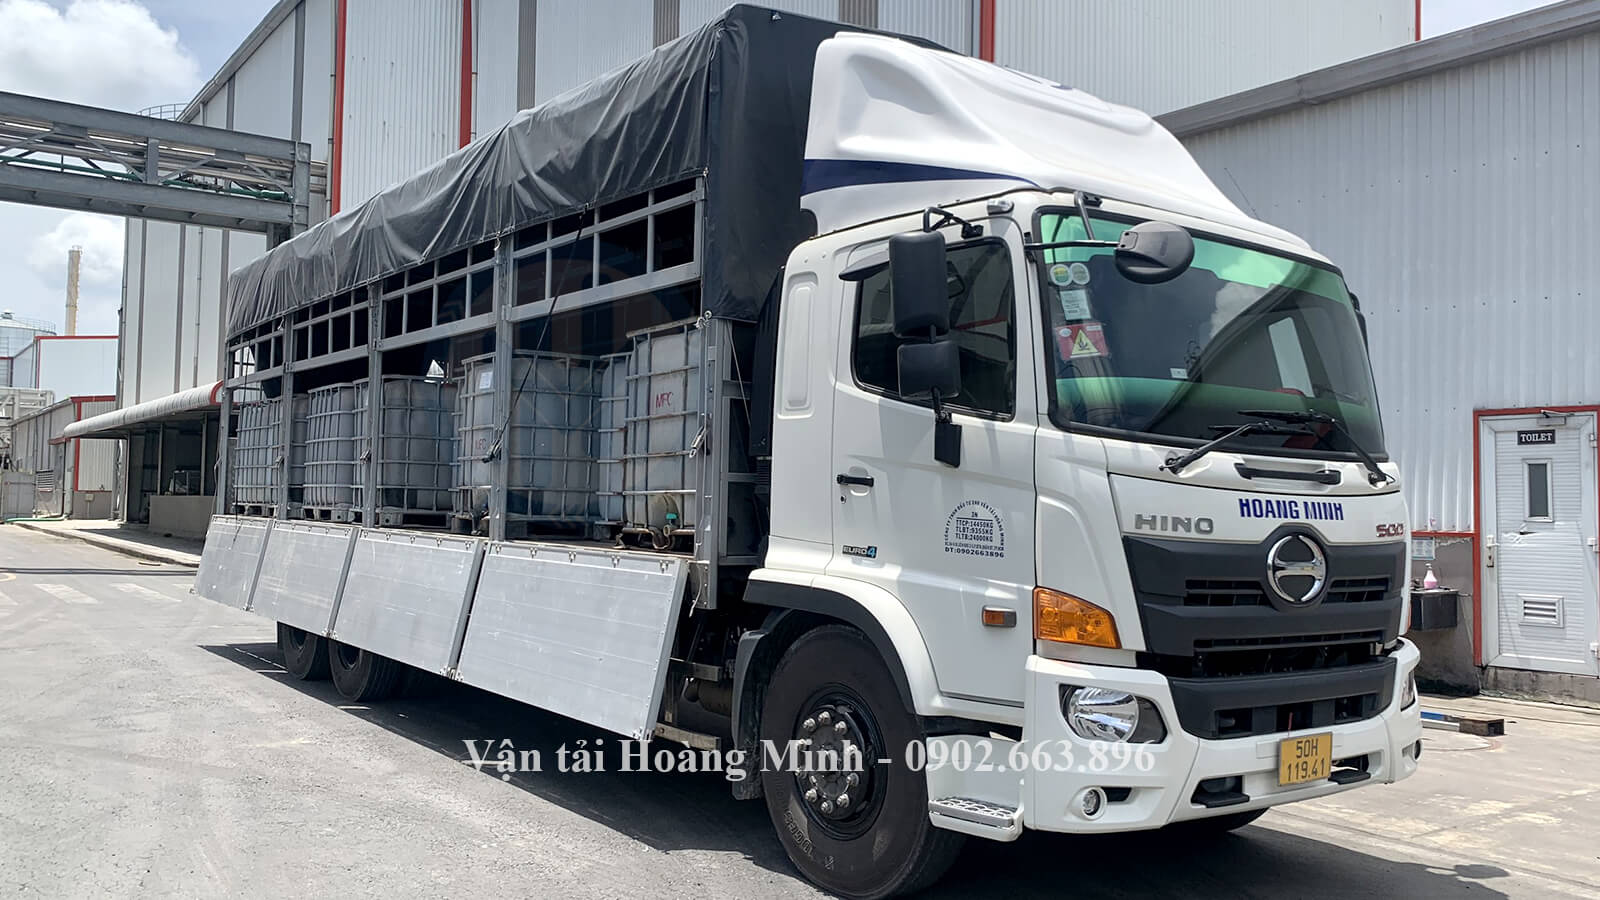 Hình ảnh nhân viên điều khiển xe tải chở các thùng hoá chất cho khách tại KCN An Giang.jpg